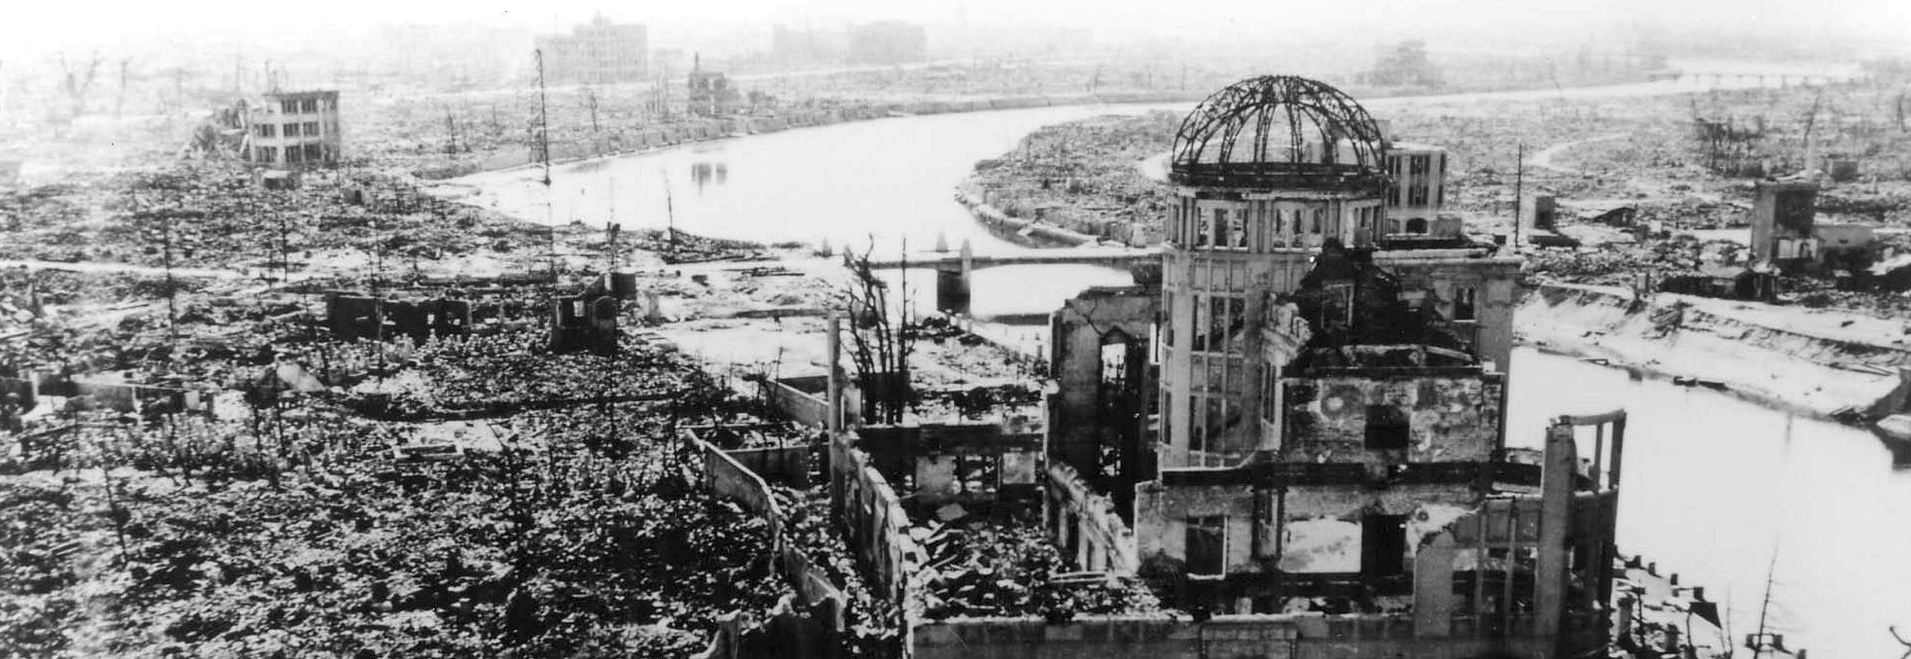 Pred 77 leti atomska bomba uničila Hirošimo, jedrska nevarnost nam spet grozi